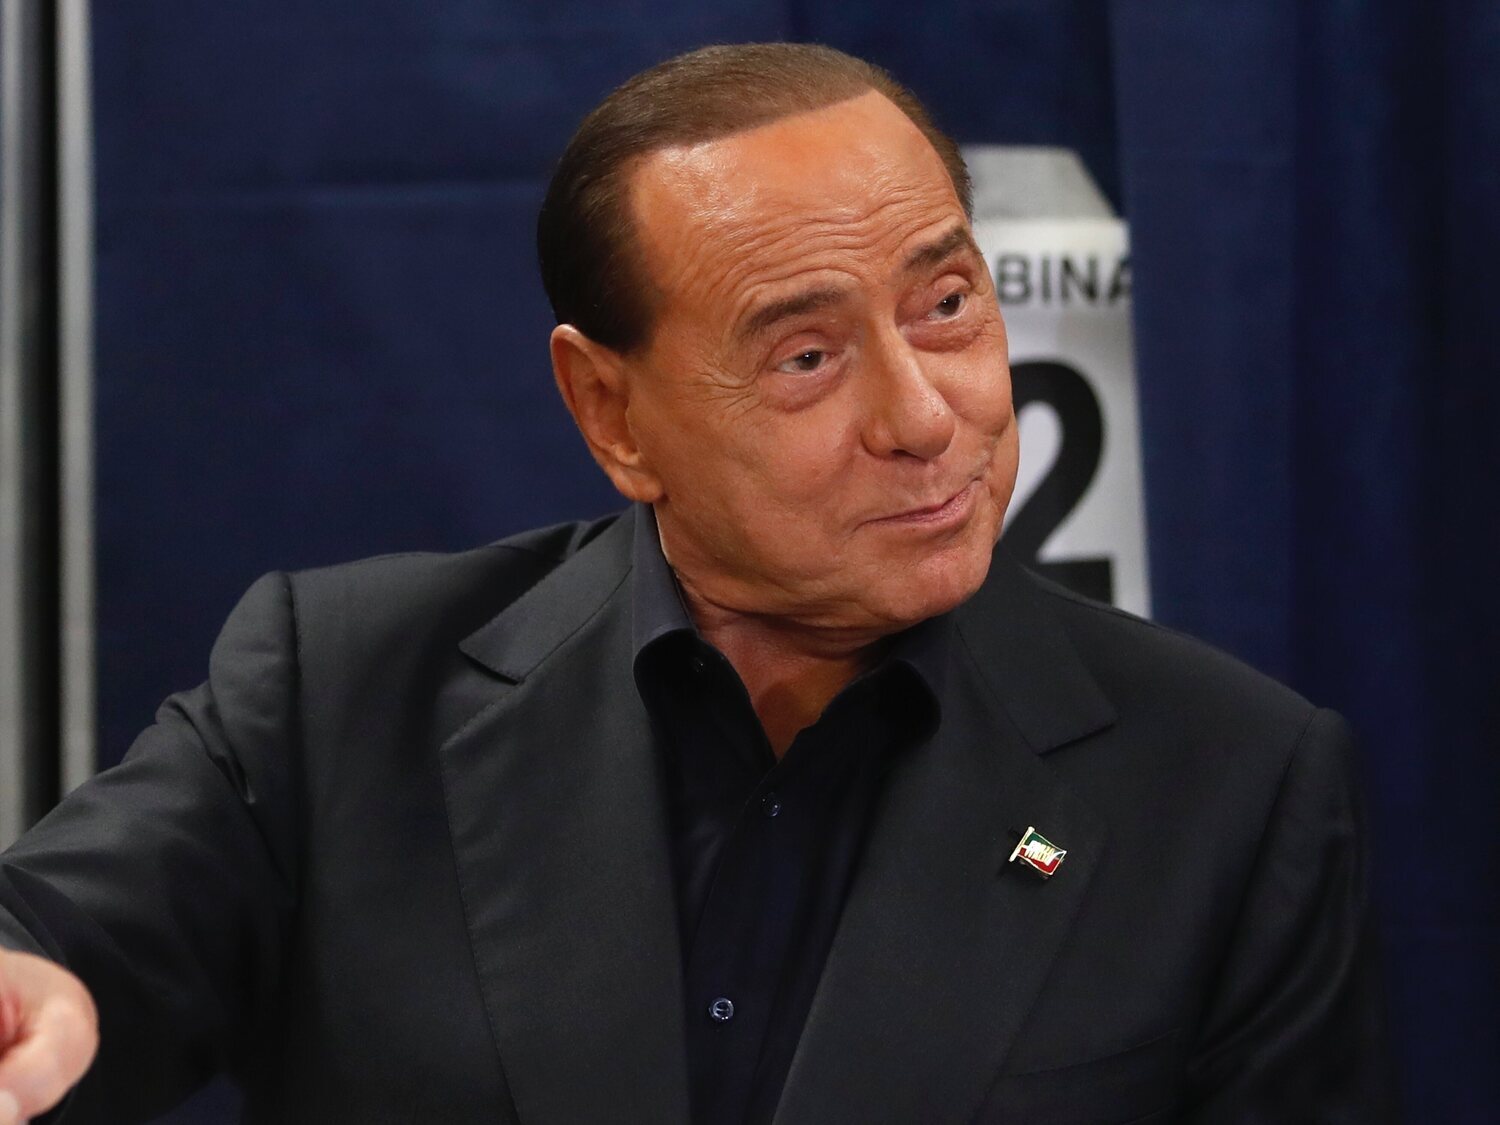 Berlusconi promete "un autobús lleno de prostitutas" a los jugadores de su equipo de fútbol